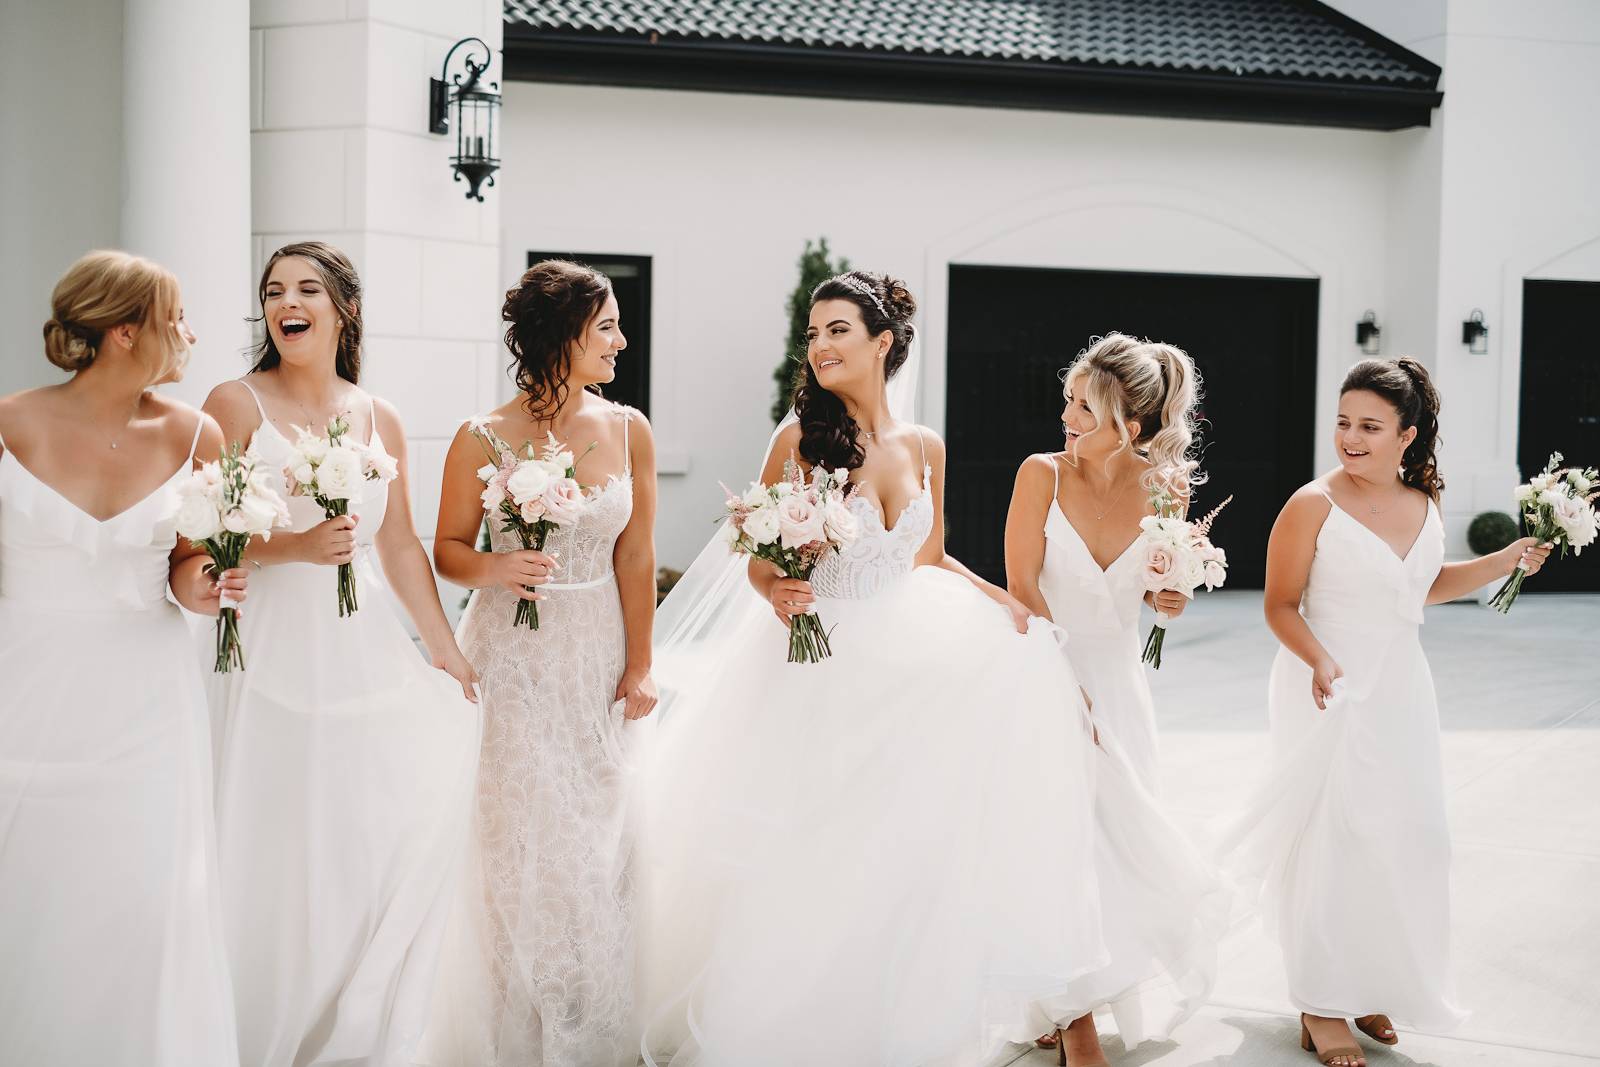 Elegant White Bridesmaid Dresses and Bride